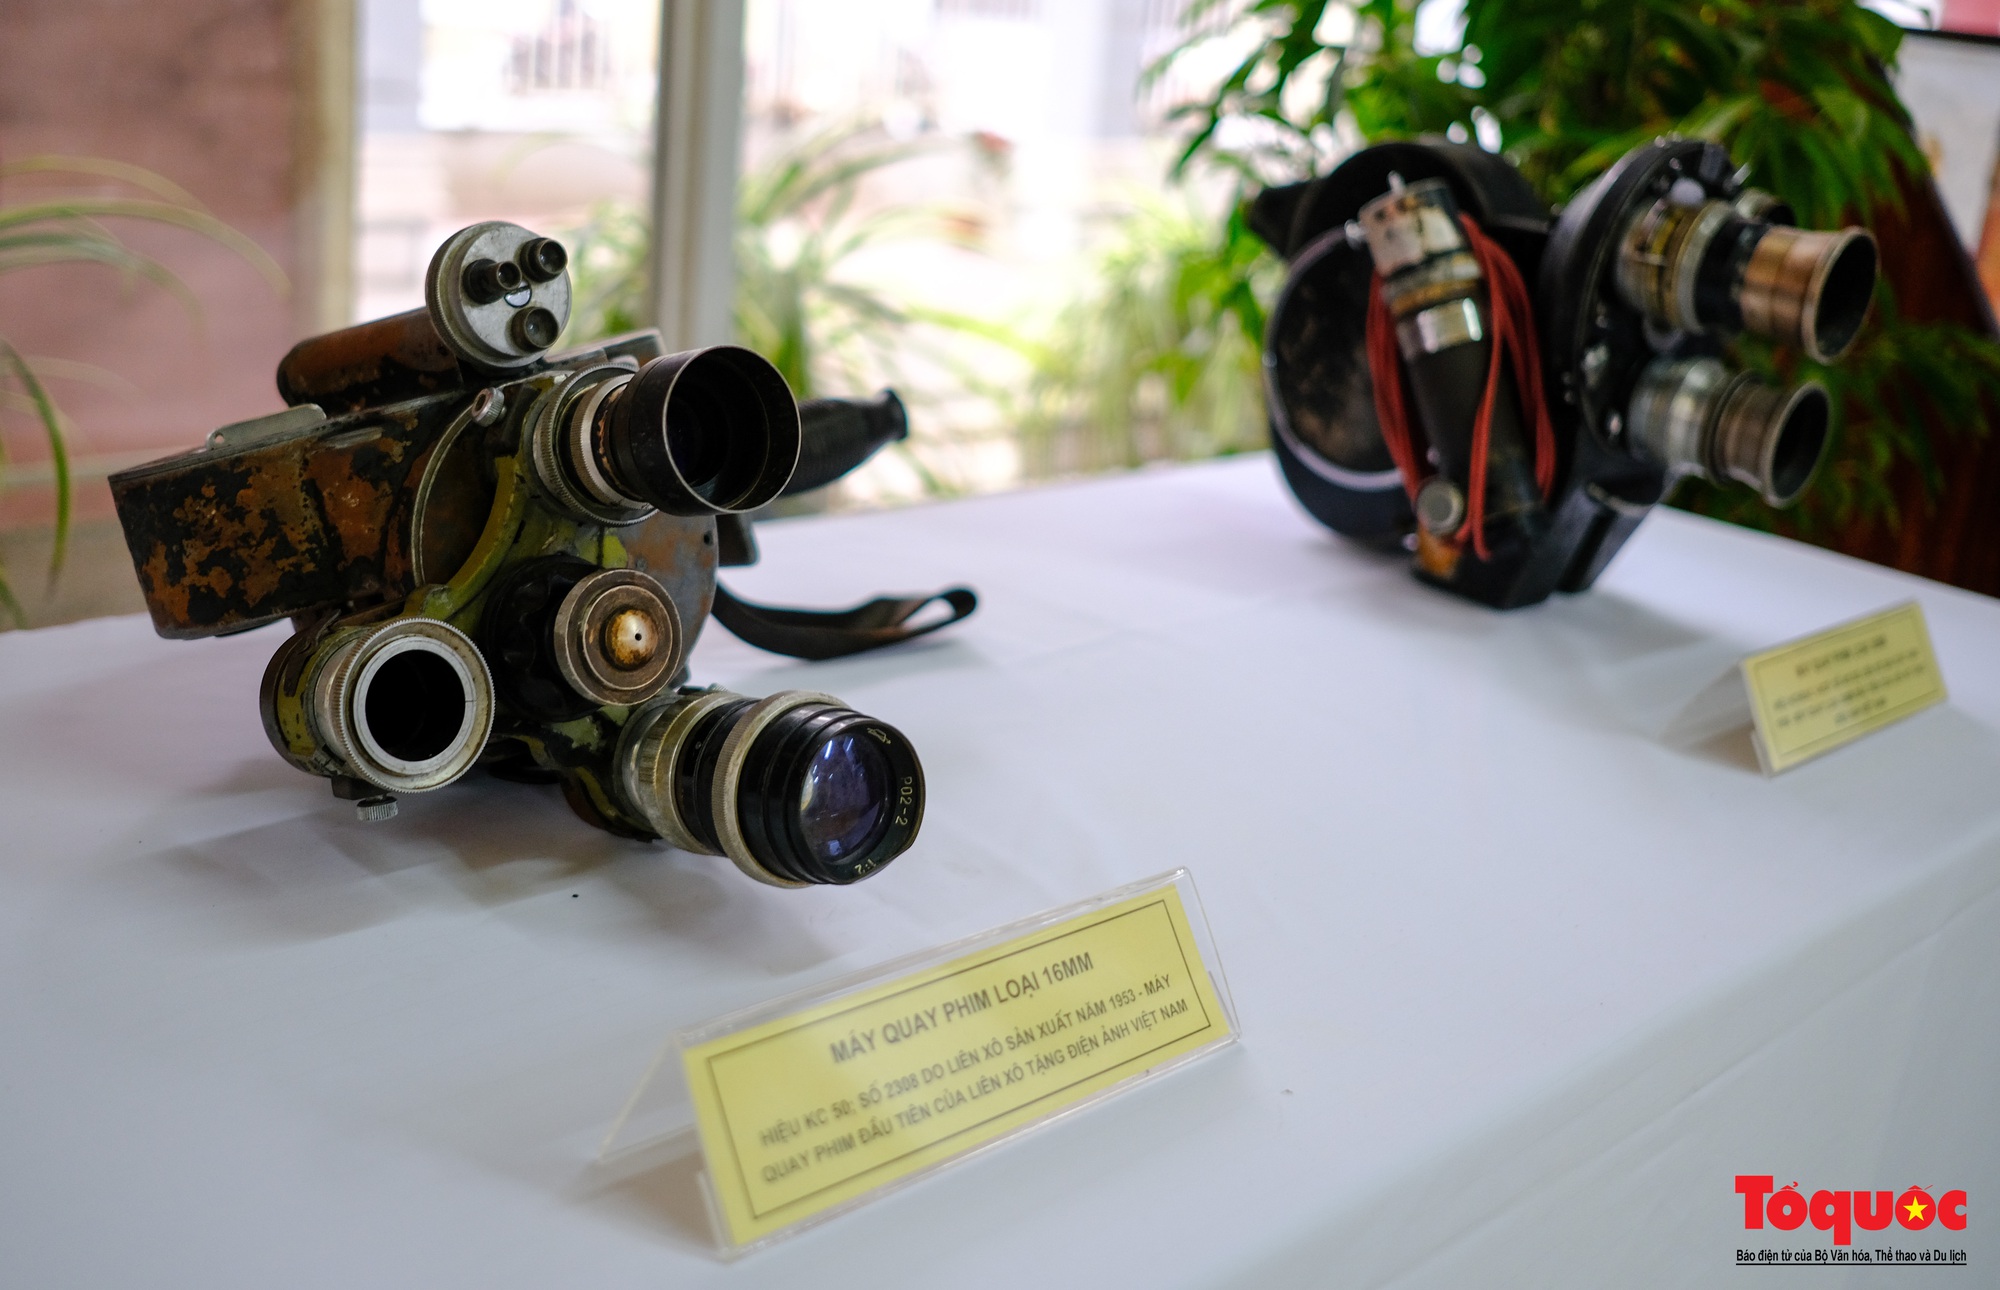 Hơn 200 tư liệu, hiện vật quý được trưng bày kỷ niệm 70 năm Điện ảnh Cách mạng Việt Nam - Ảnh 7.